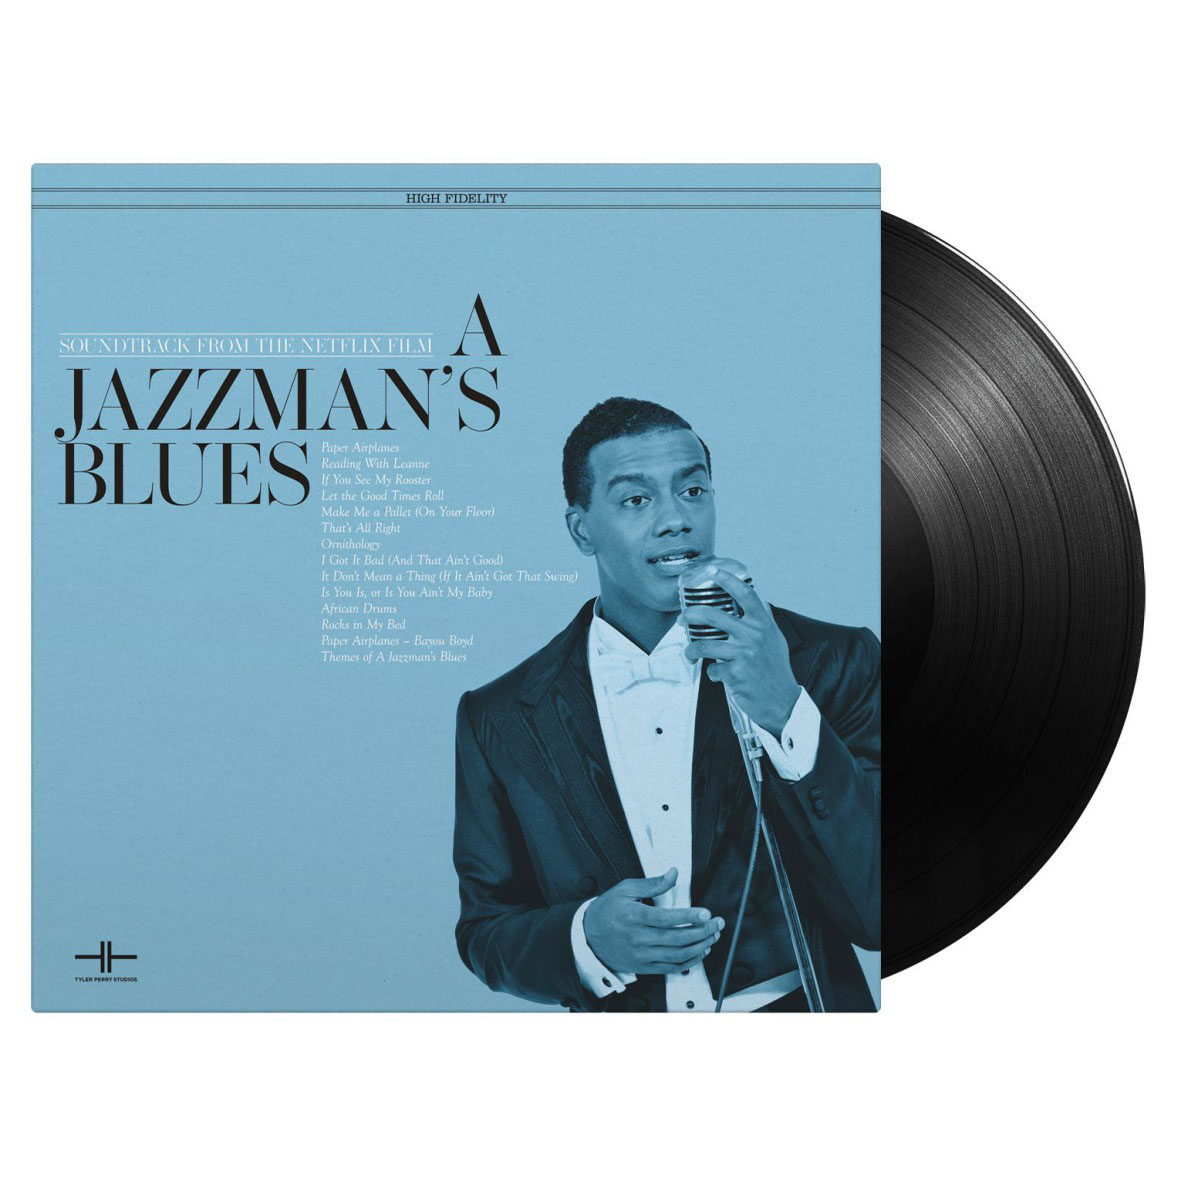 재즈맨 블루스 영화음악 (A Jazzman's Blues OST by Aaron Zigman / Terence Blanchard) [LP]